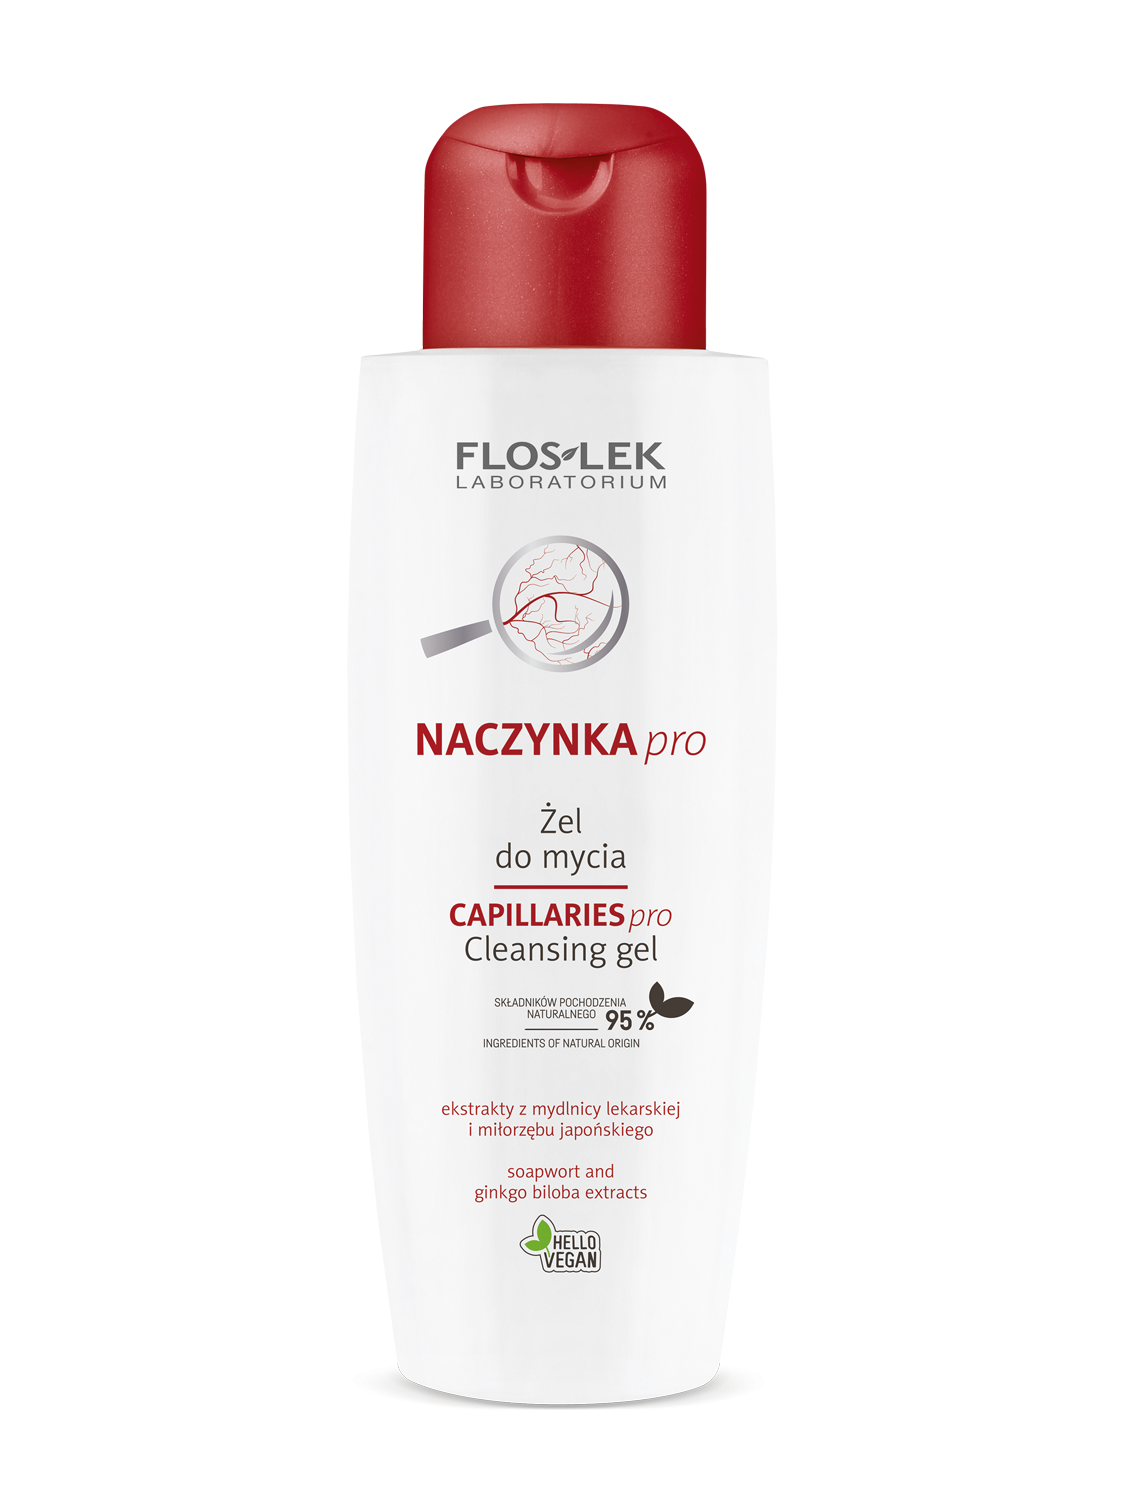 CAPILLARIES pro® Cleansing gel - 200 ml - Floslek